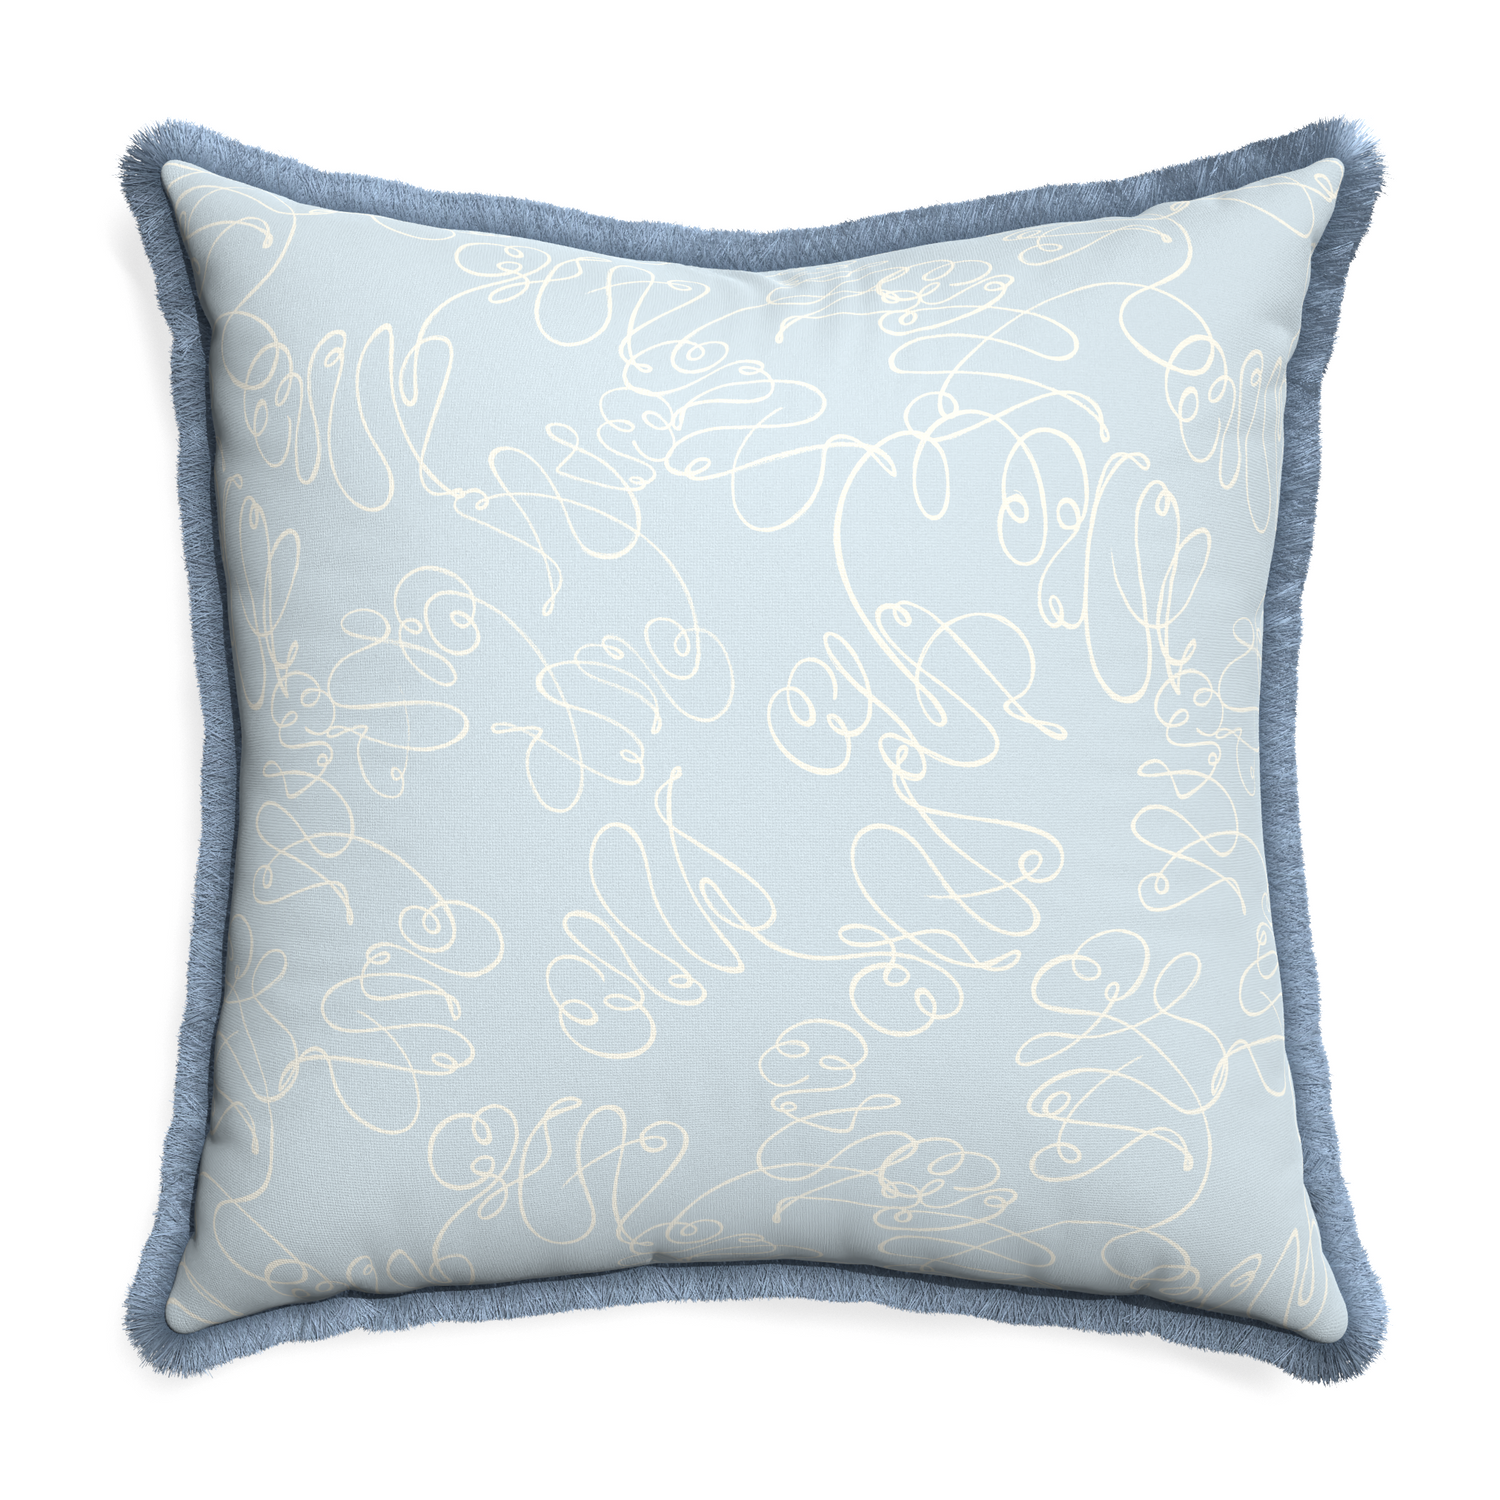 Euro-sham mirabella custom pillow with sky fringe on white background